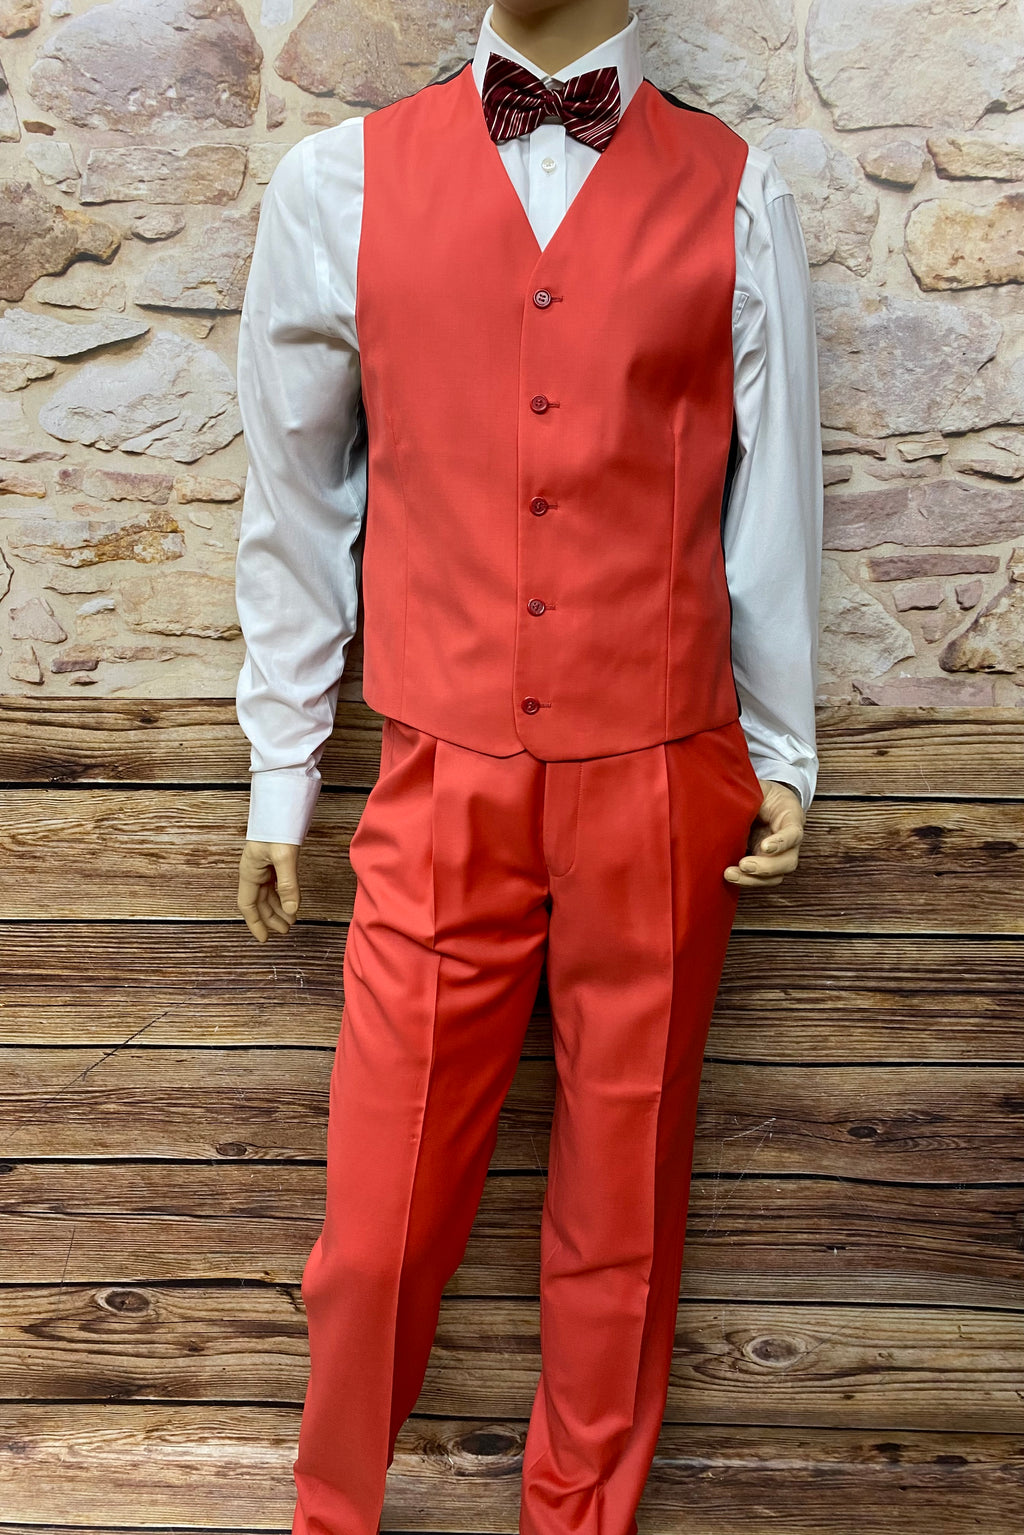 Roter 3teiliger Anzug, Weste, Hose, Fliege Gr,48